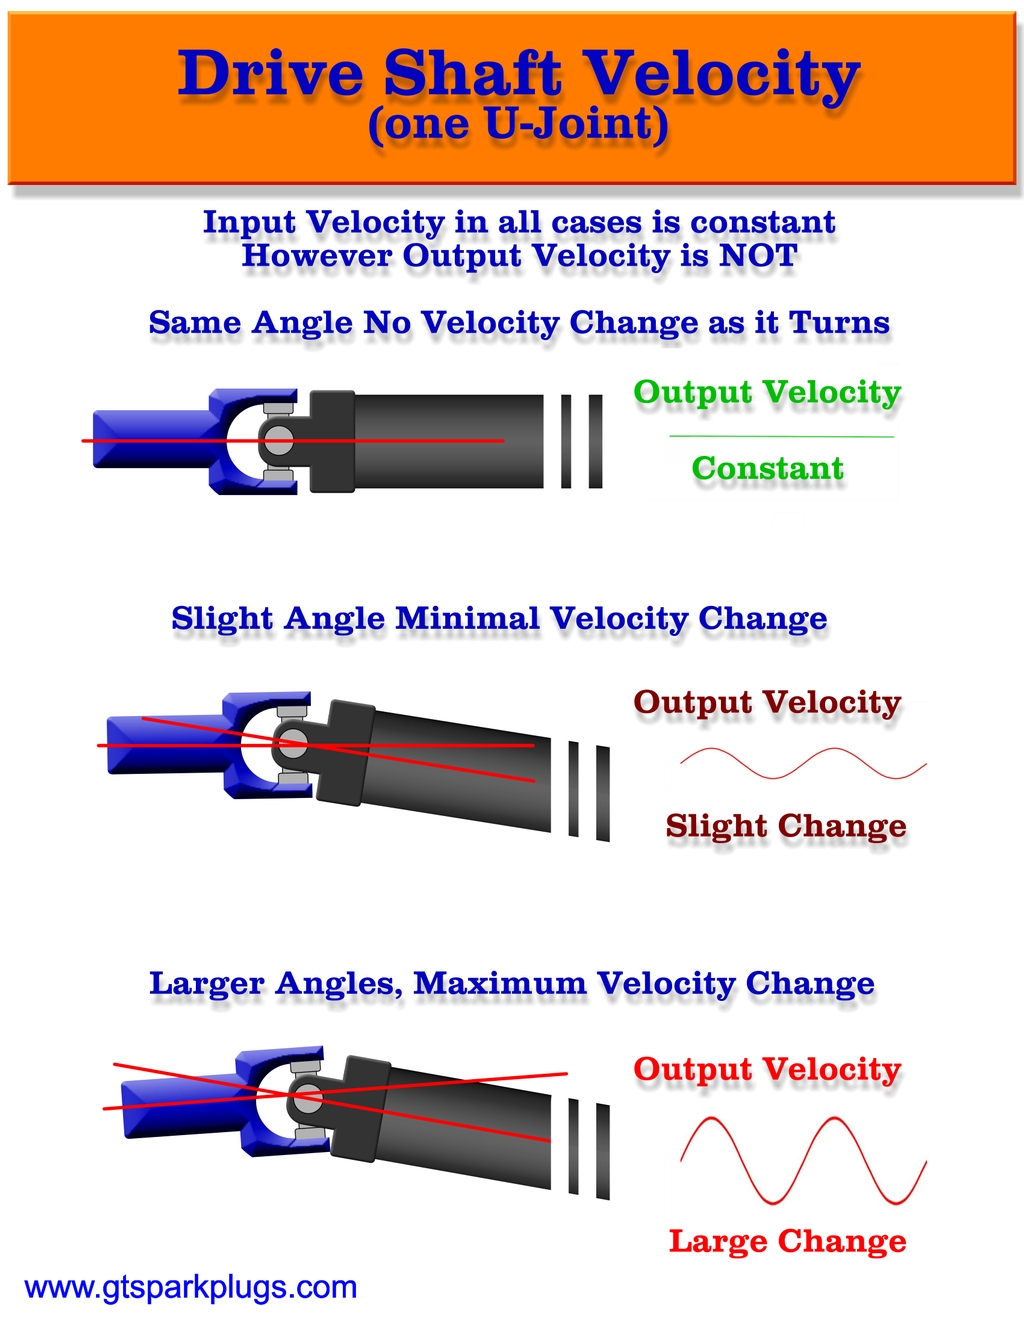 Drive Shaft Velocity Explained